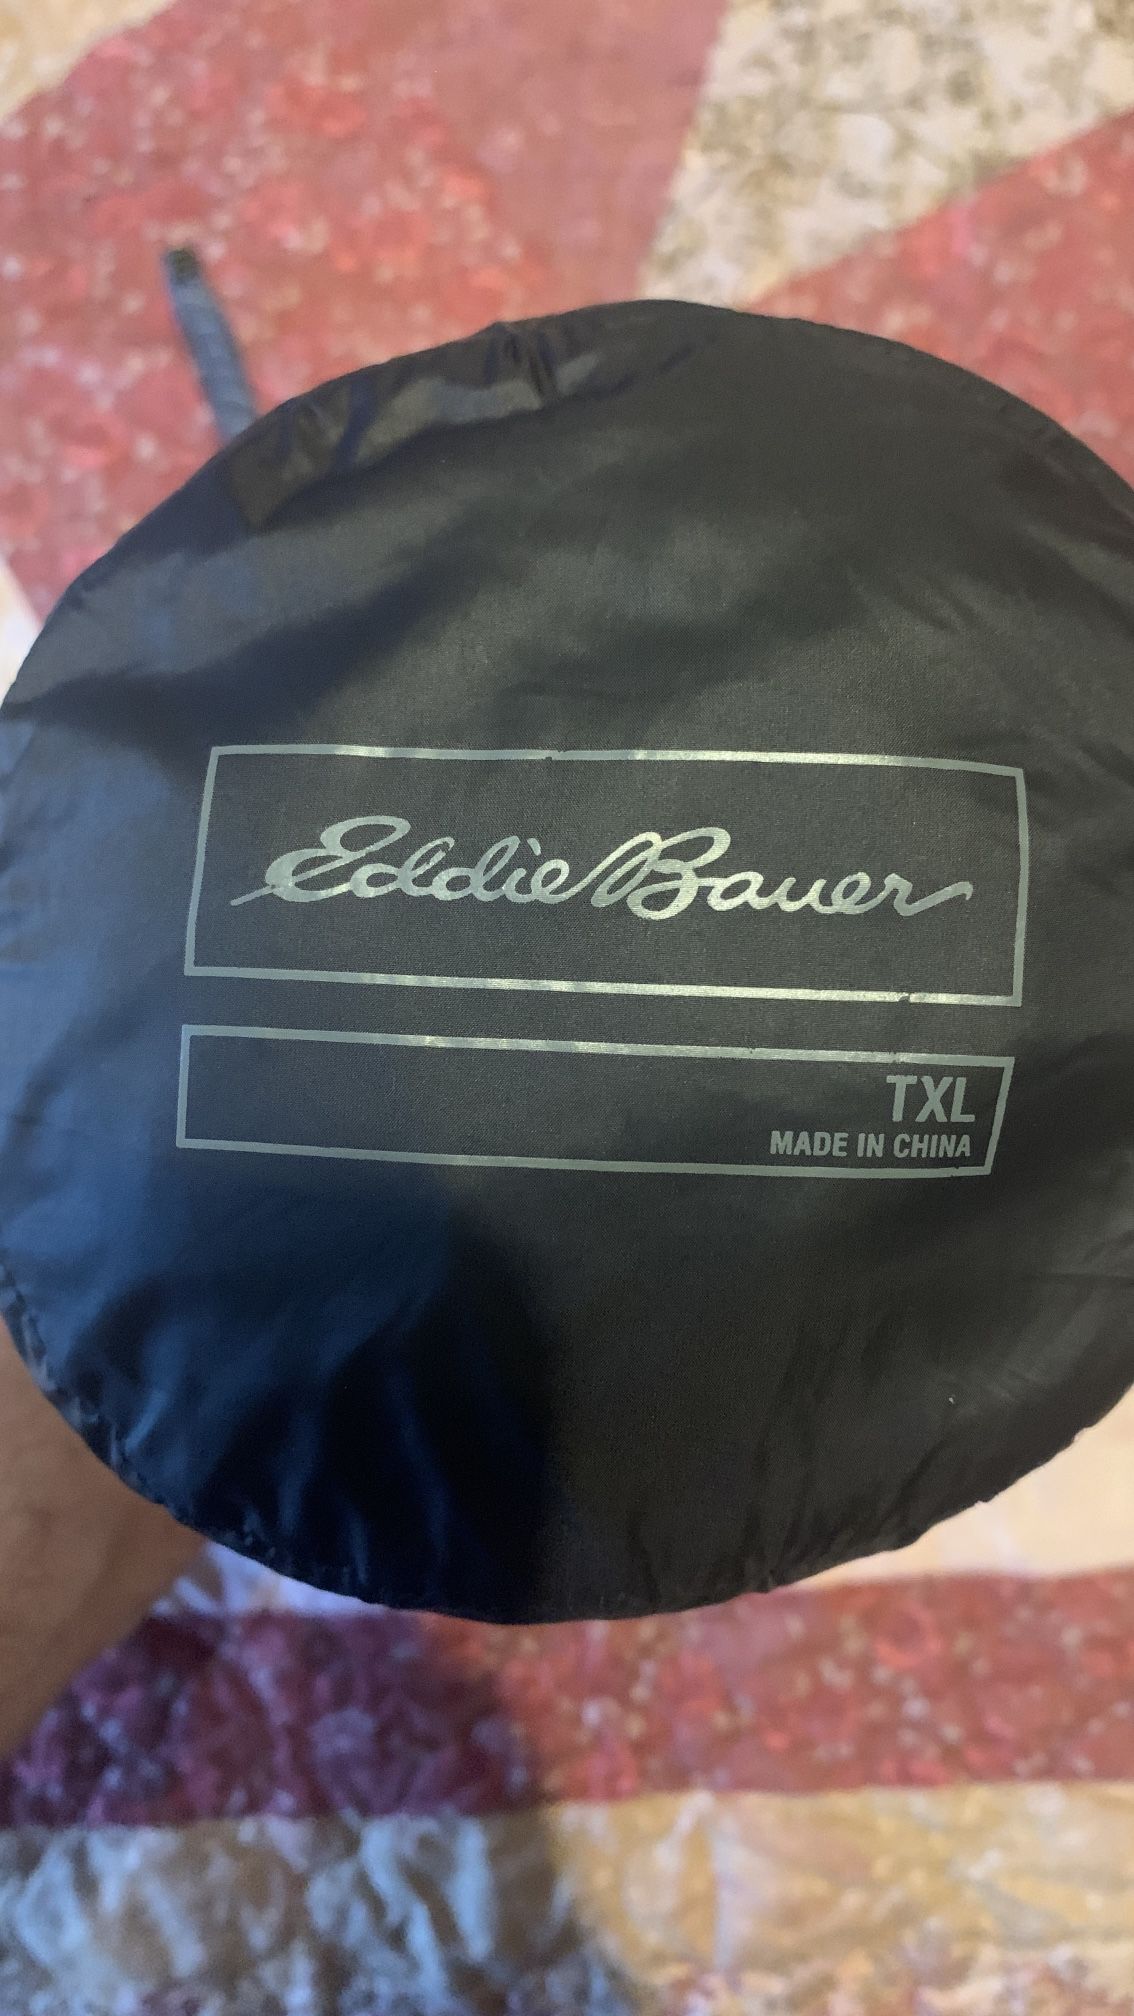 Eddie Bauer EB650 Down Jacket TXL